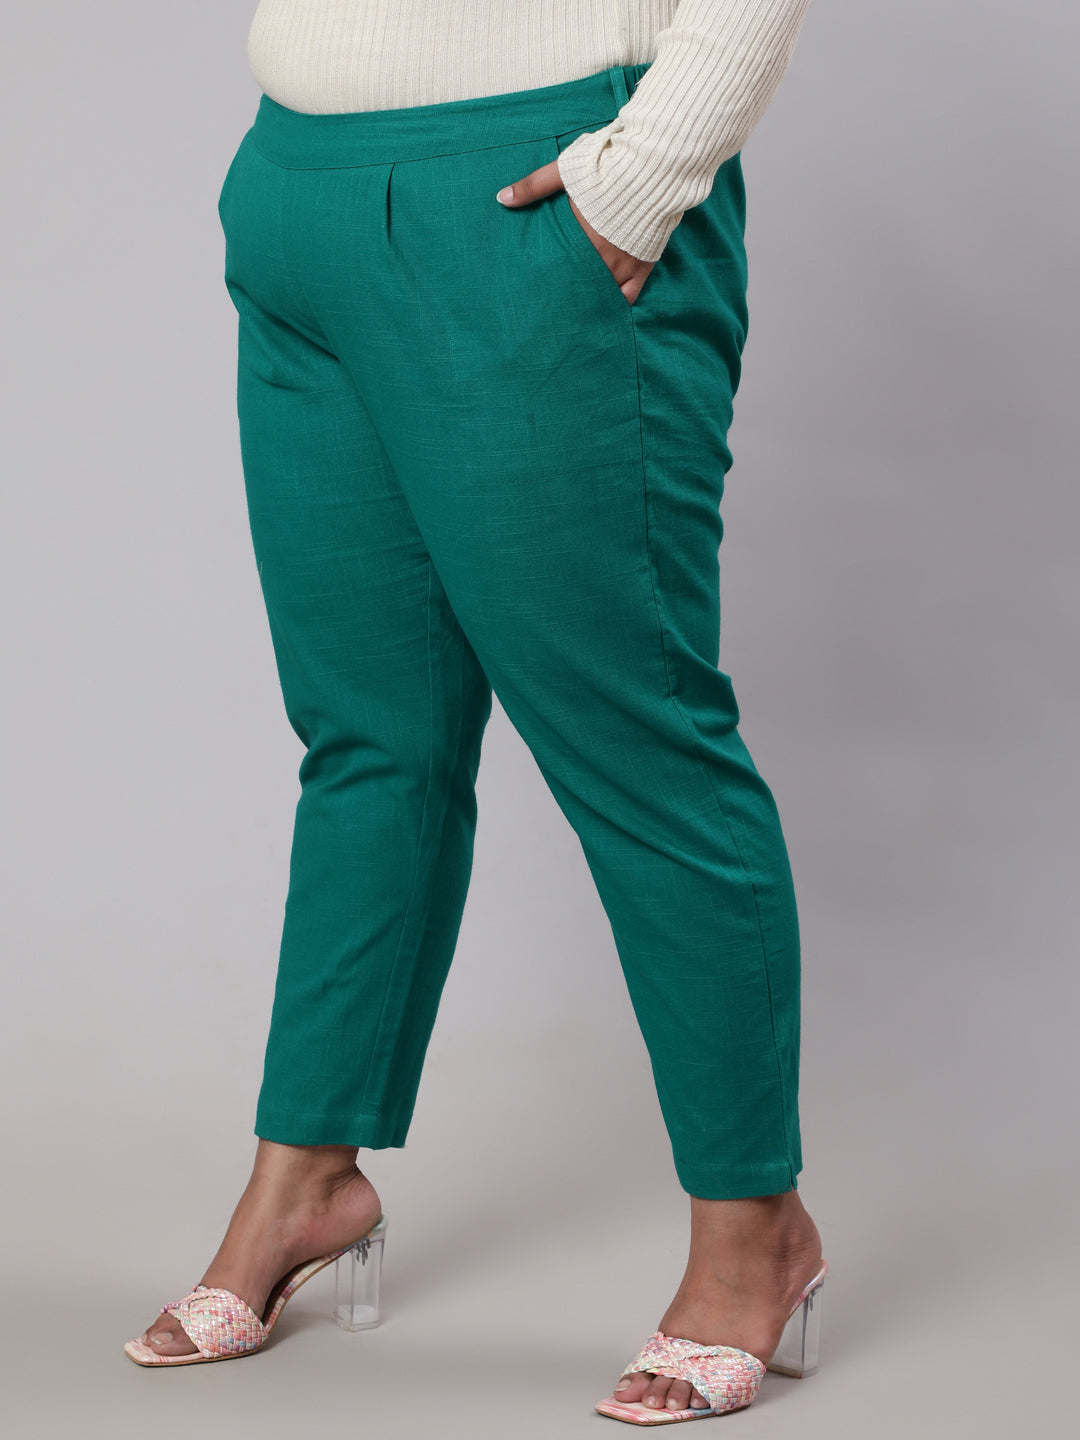 Grass Green Plus Size Cotton Slub Pants